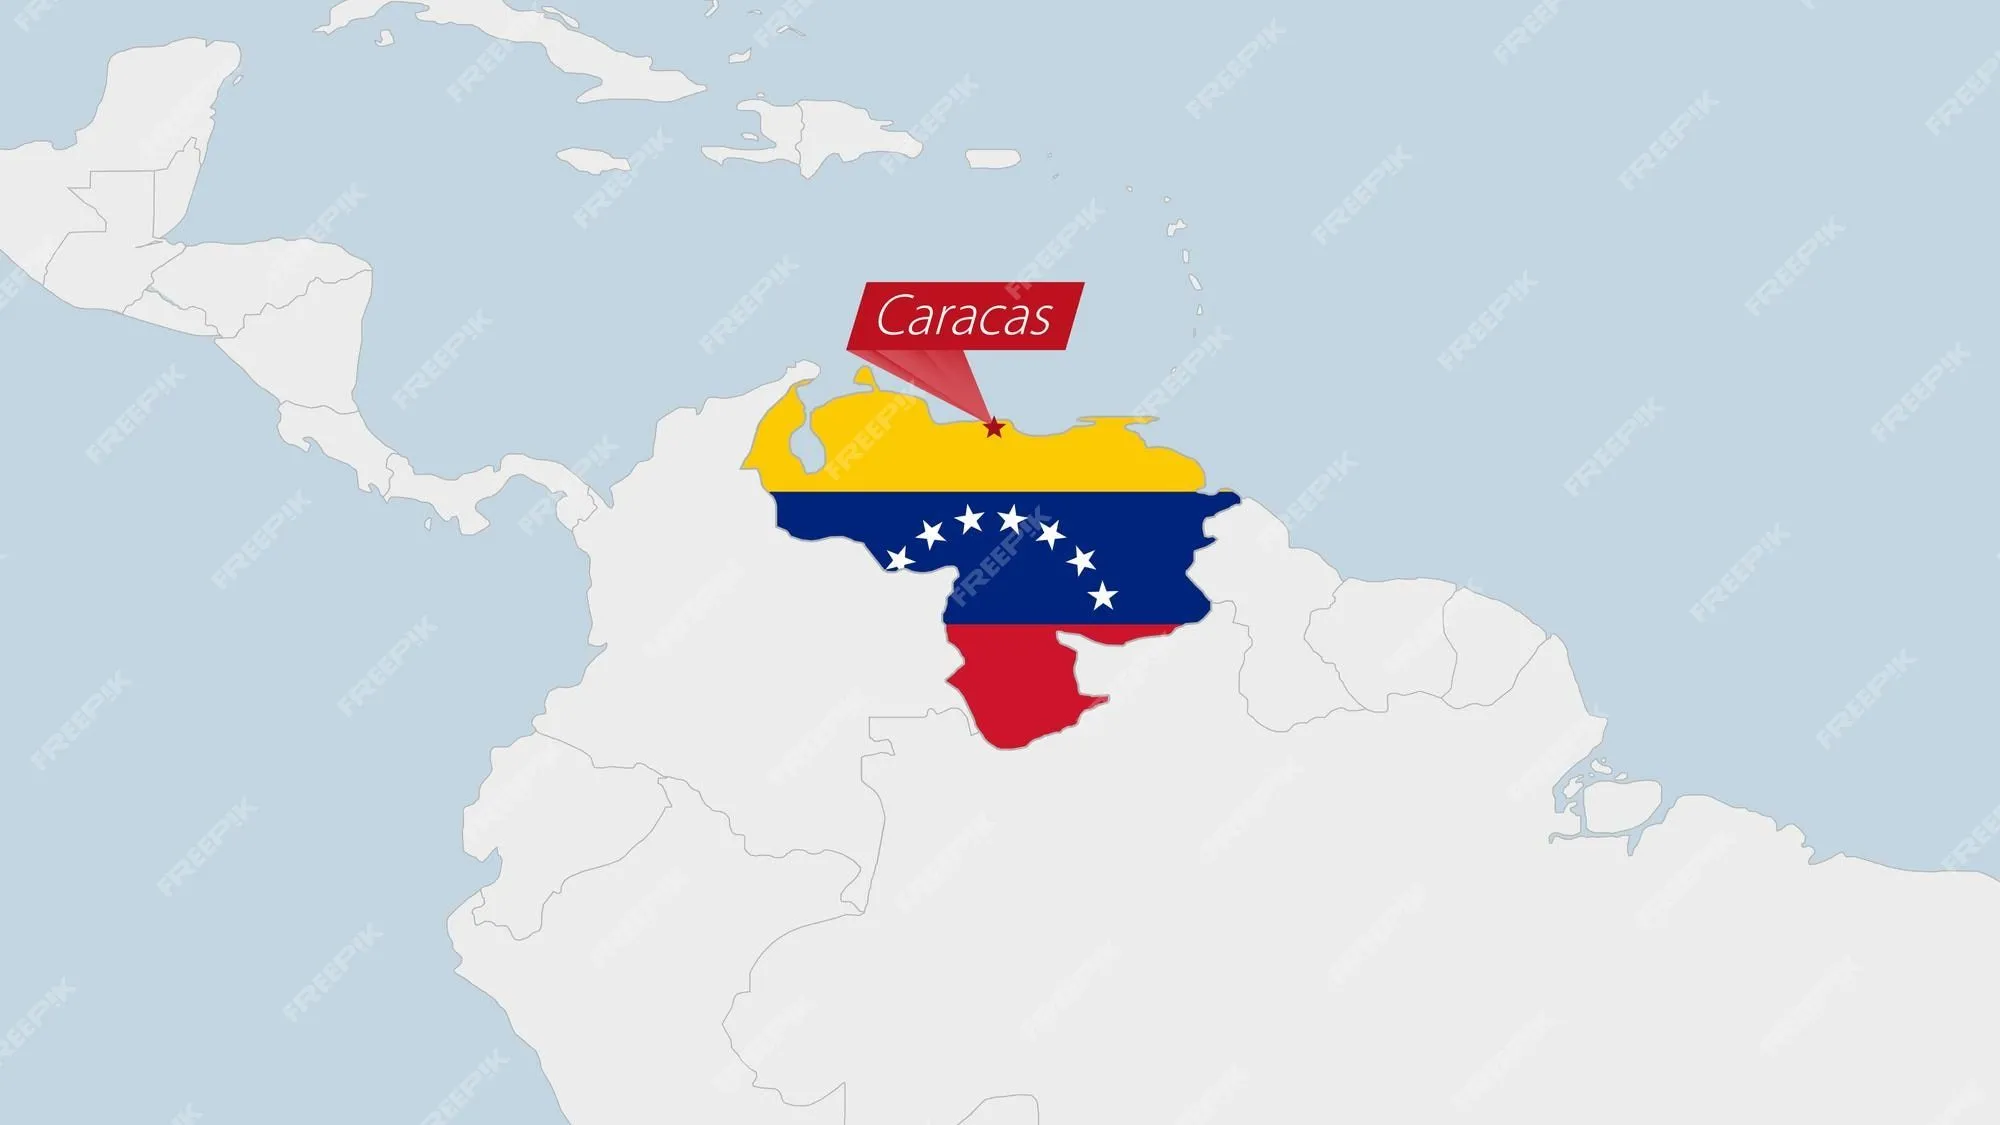 Mapa de venezuela resaltado en los colores de la bandera de venezuela y pin  de la capital del país caracas | Vector Premium